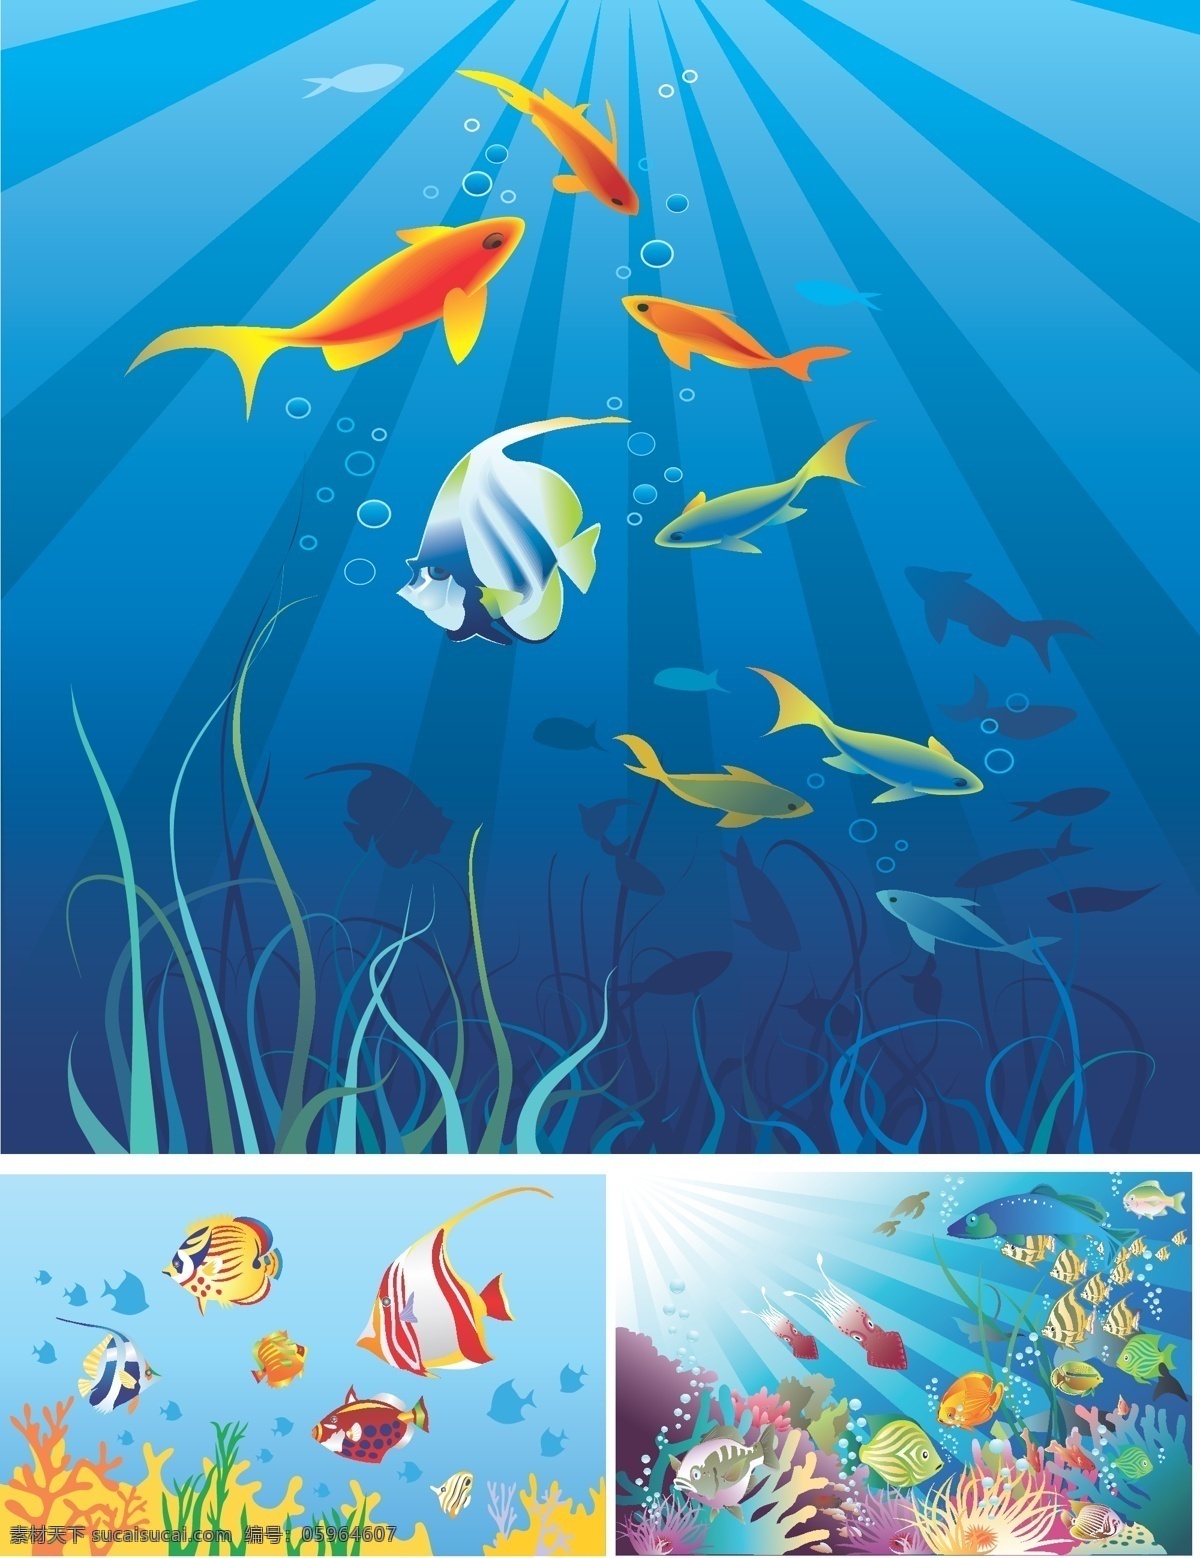 矢量 卡通 海洋 场景 海洋动物 海洋鱼类 卡通的海洋 海洋场景 卡通漫画海上 动物 可爱 卡通漫画 矢量图 其他矢量图